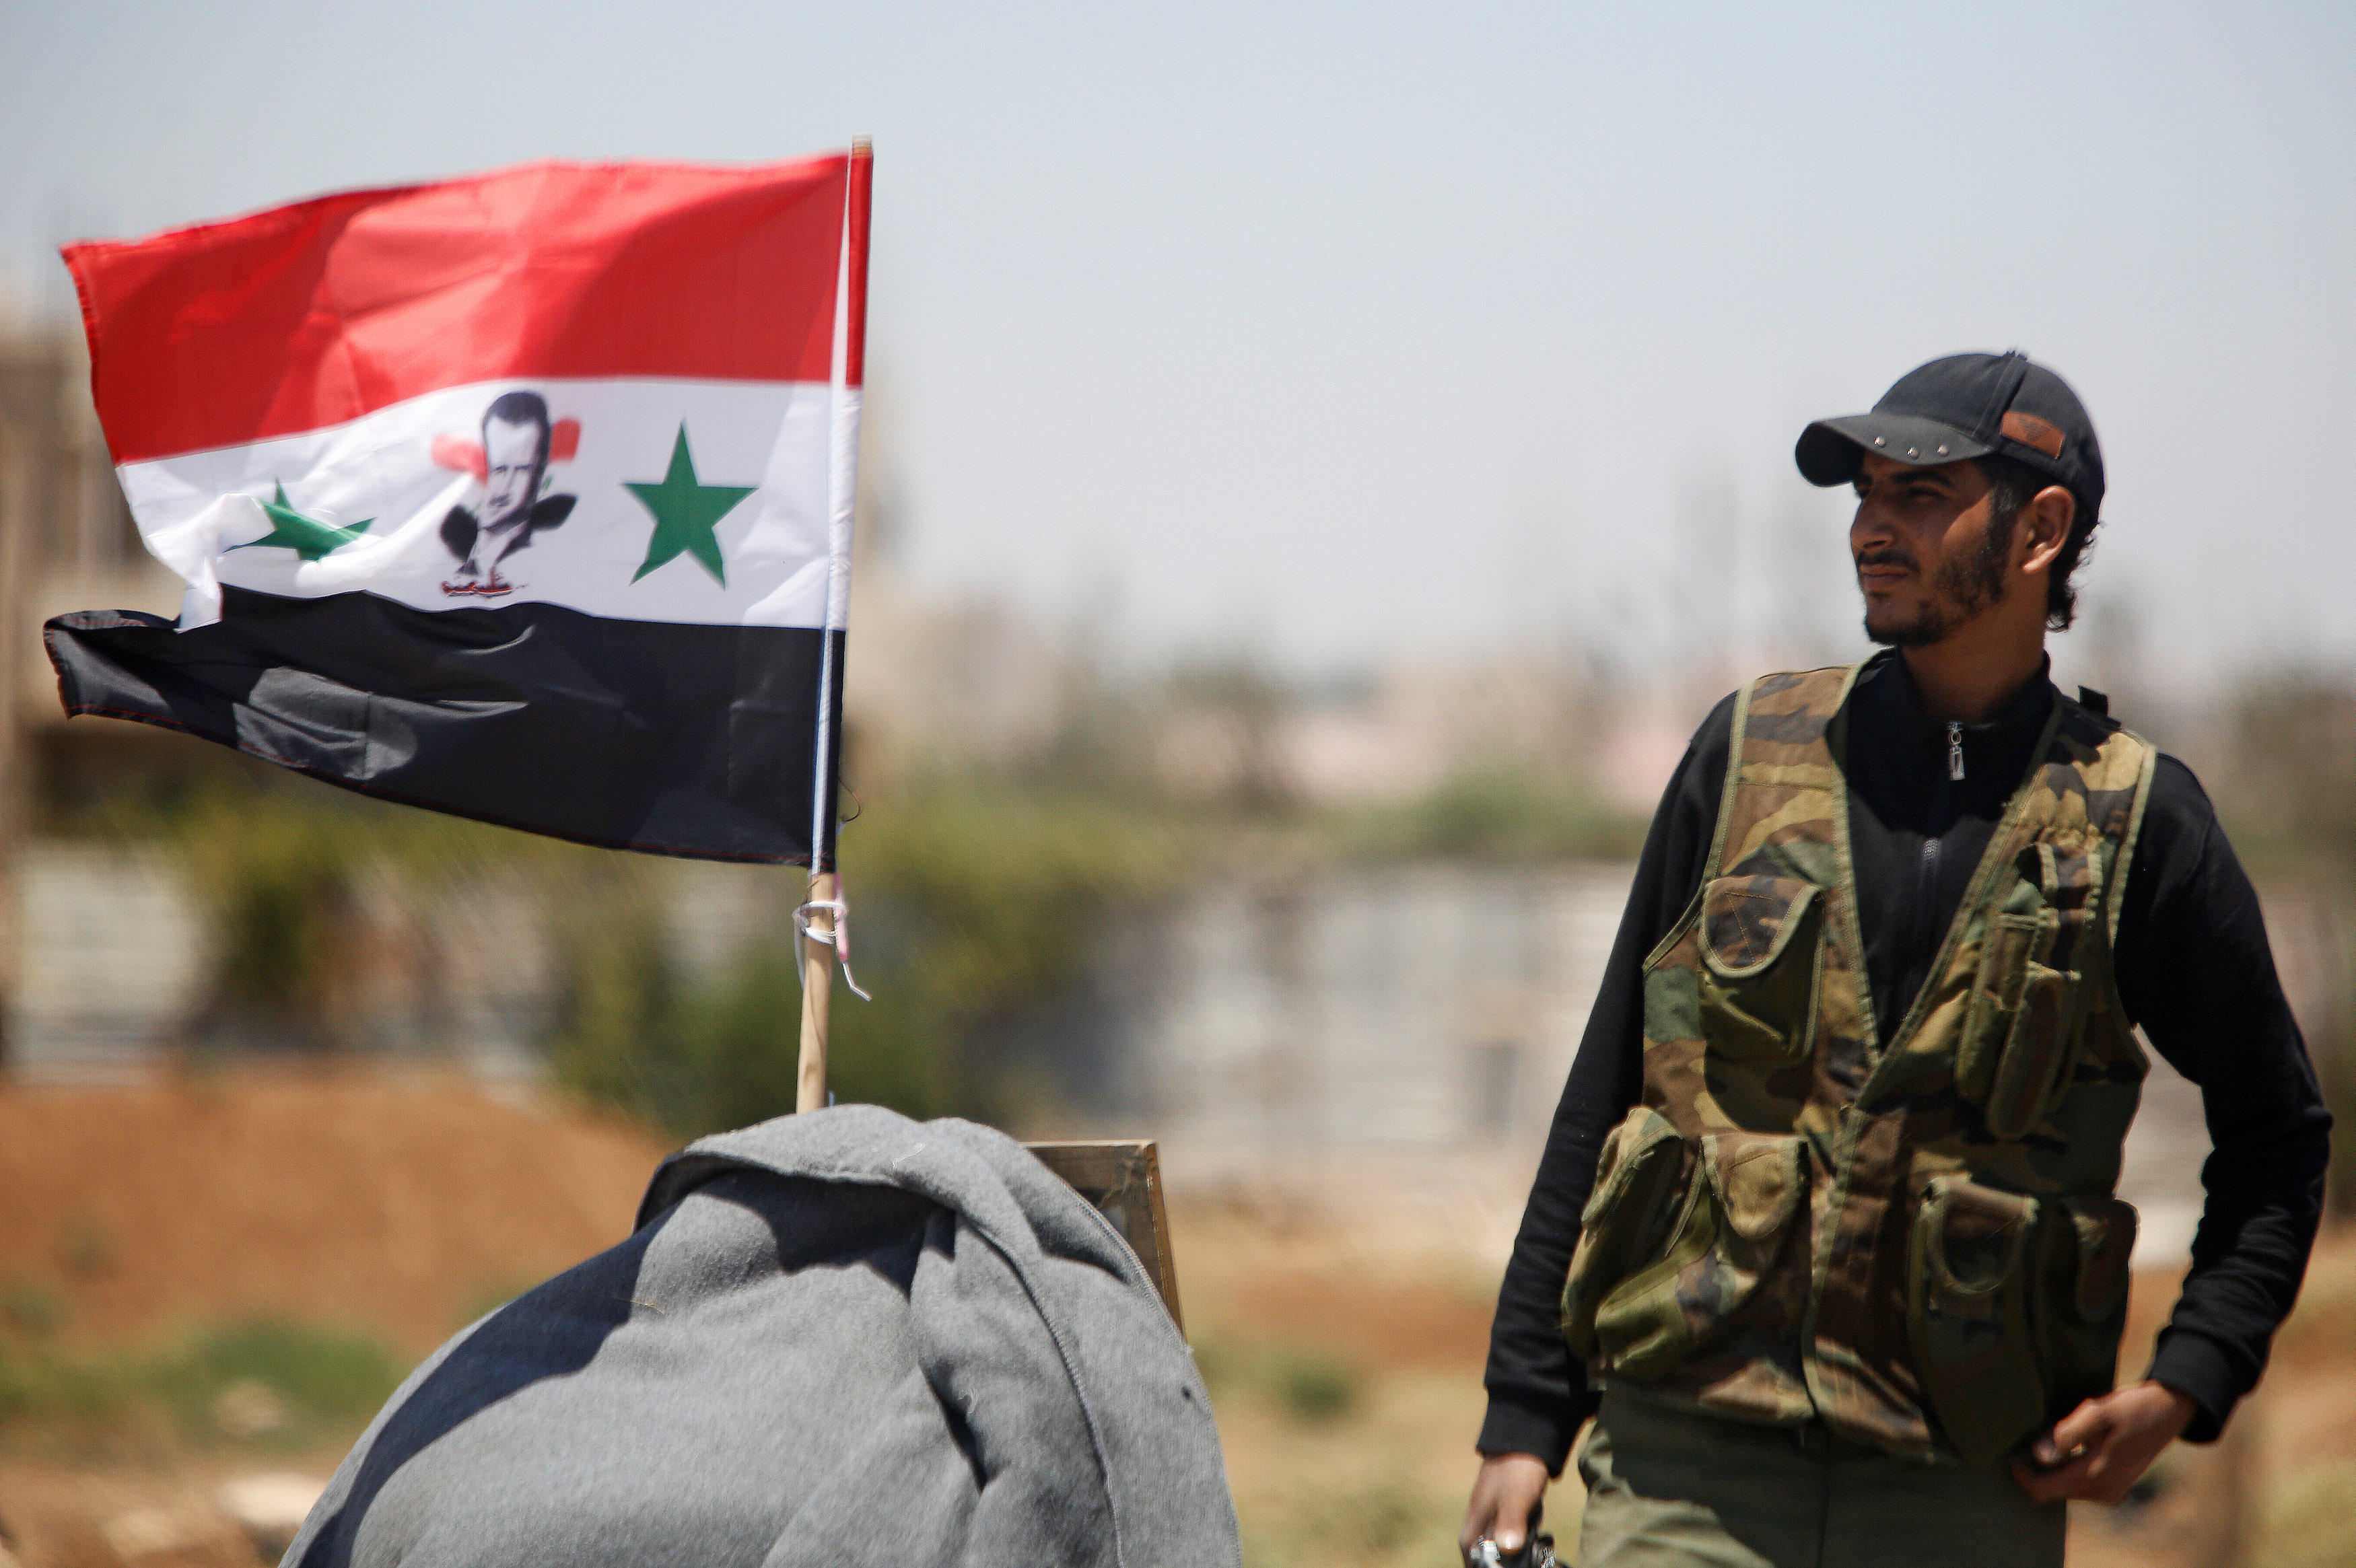 الجيش السوري يرفع علم الجمهورية بعد سيطرته على مناطق في درعا، 10 يوليو 2018. عمر صناديقي/ رويترز